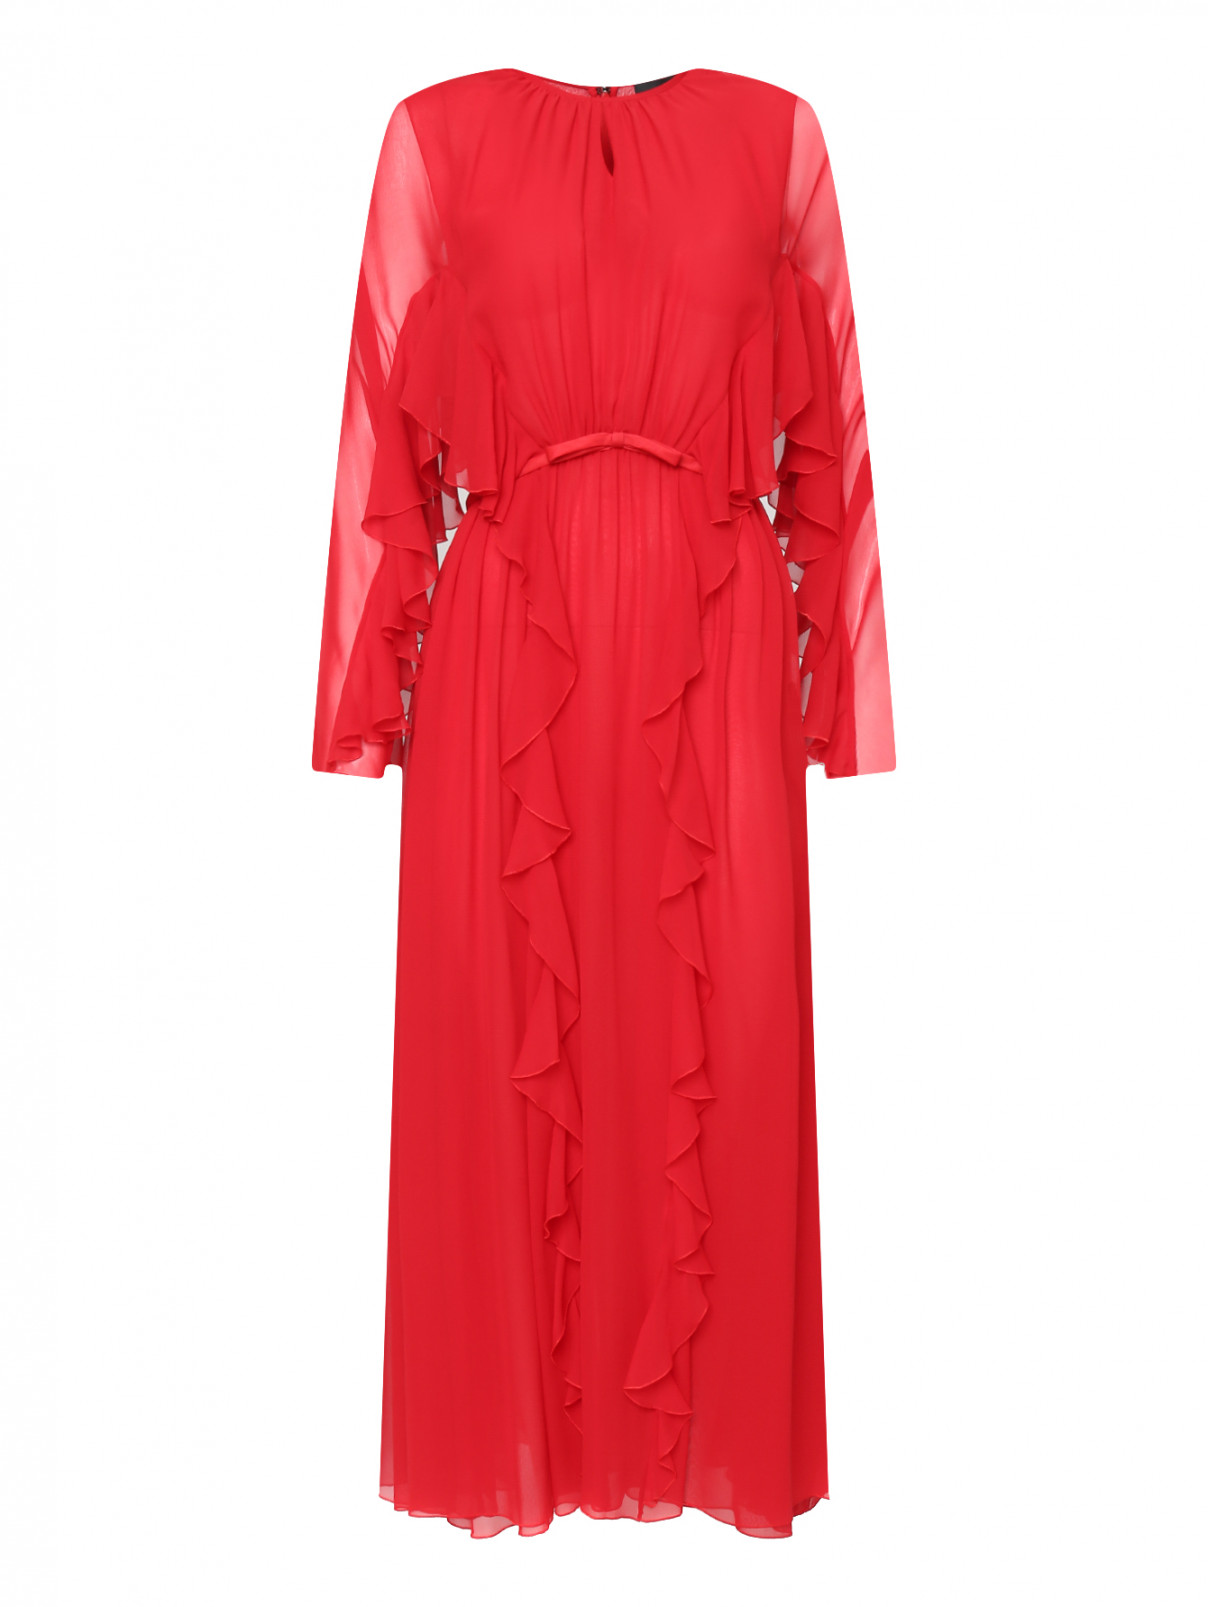 Шелковое платье макси с воланами Giambattista Valli  –  Общий вид  – Цвет:  Красный